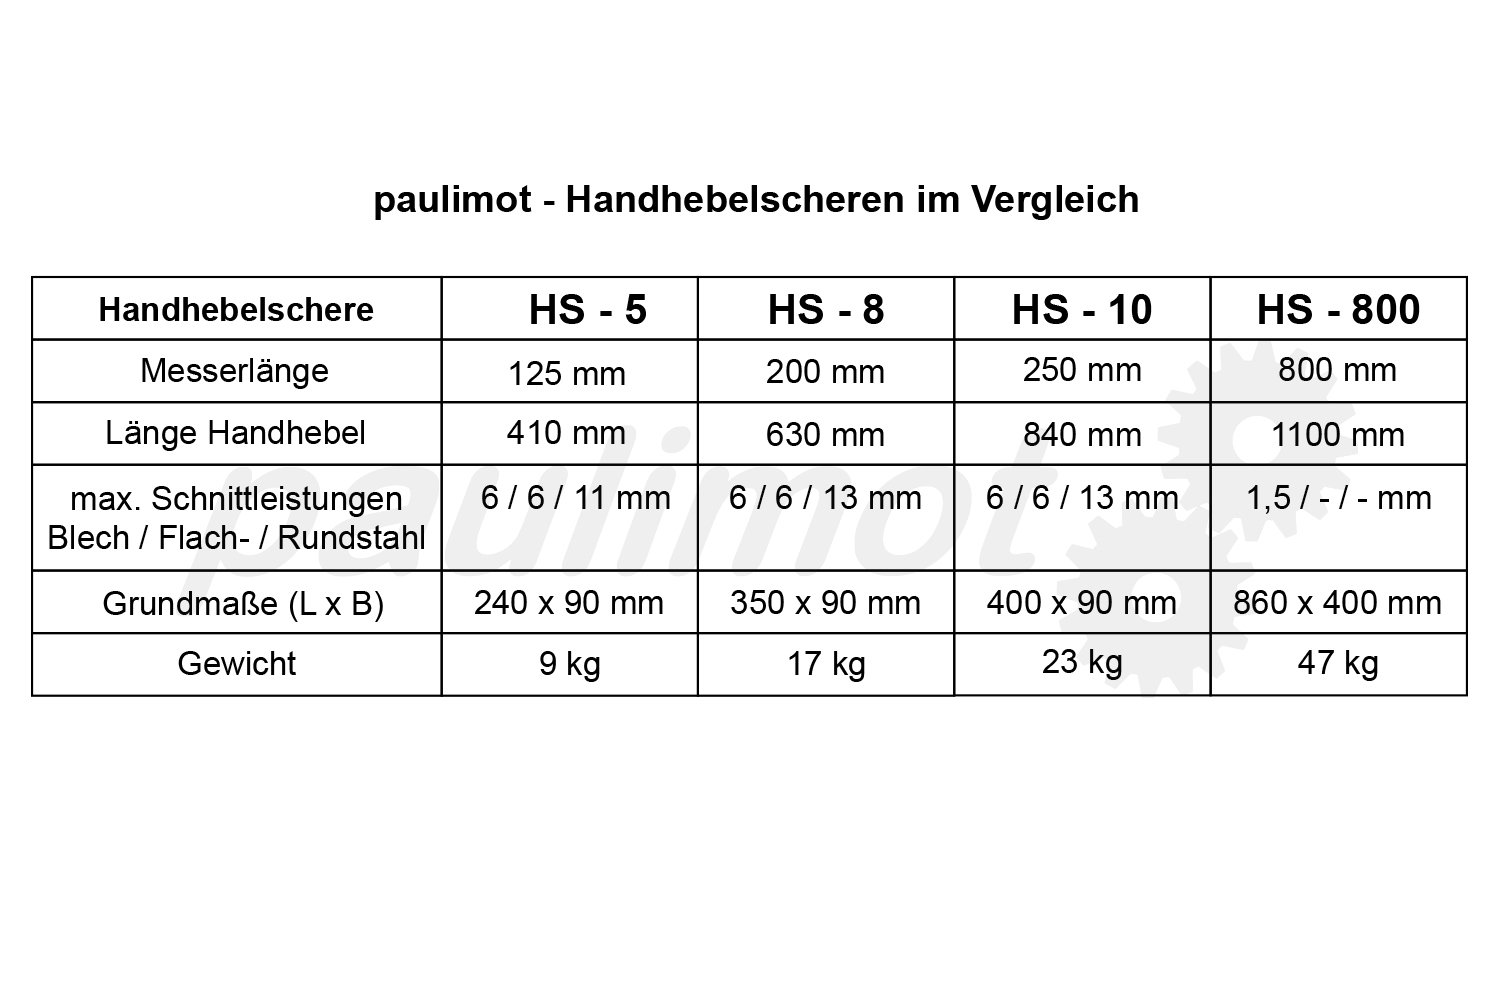 Handhebelschere 250 mm / HS - 10